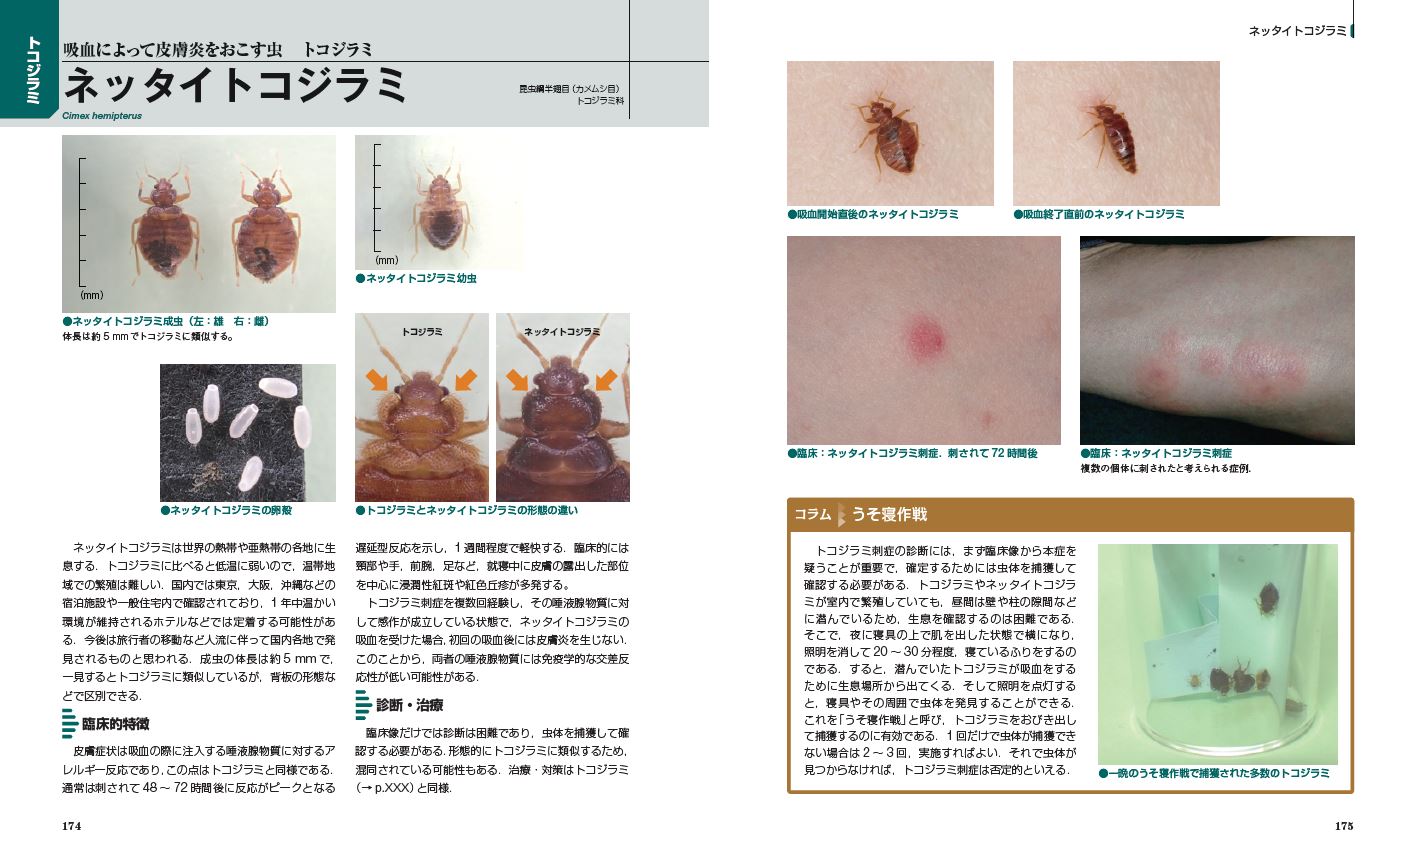 【裁断済】Dr.夏秋の臨床図鑑 虫と皮膚炎 改訂第2版